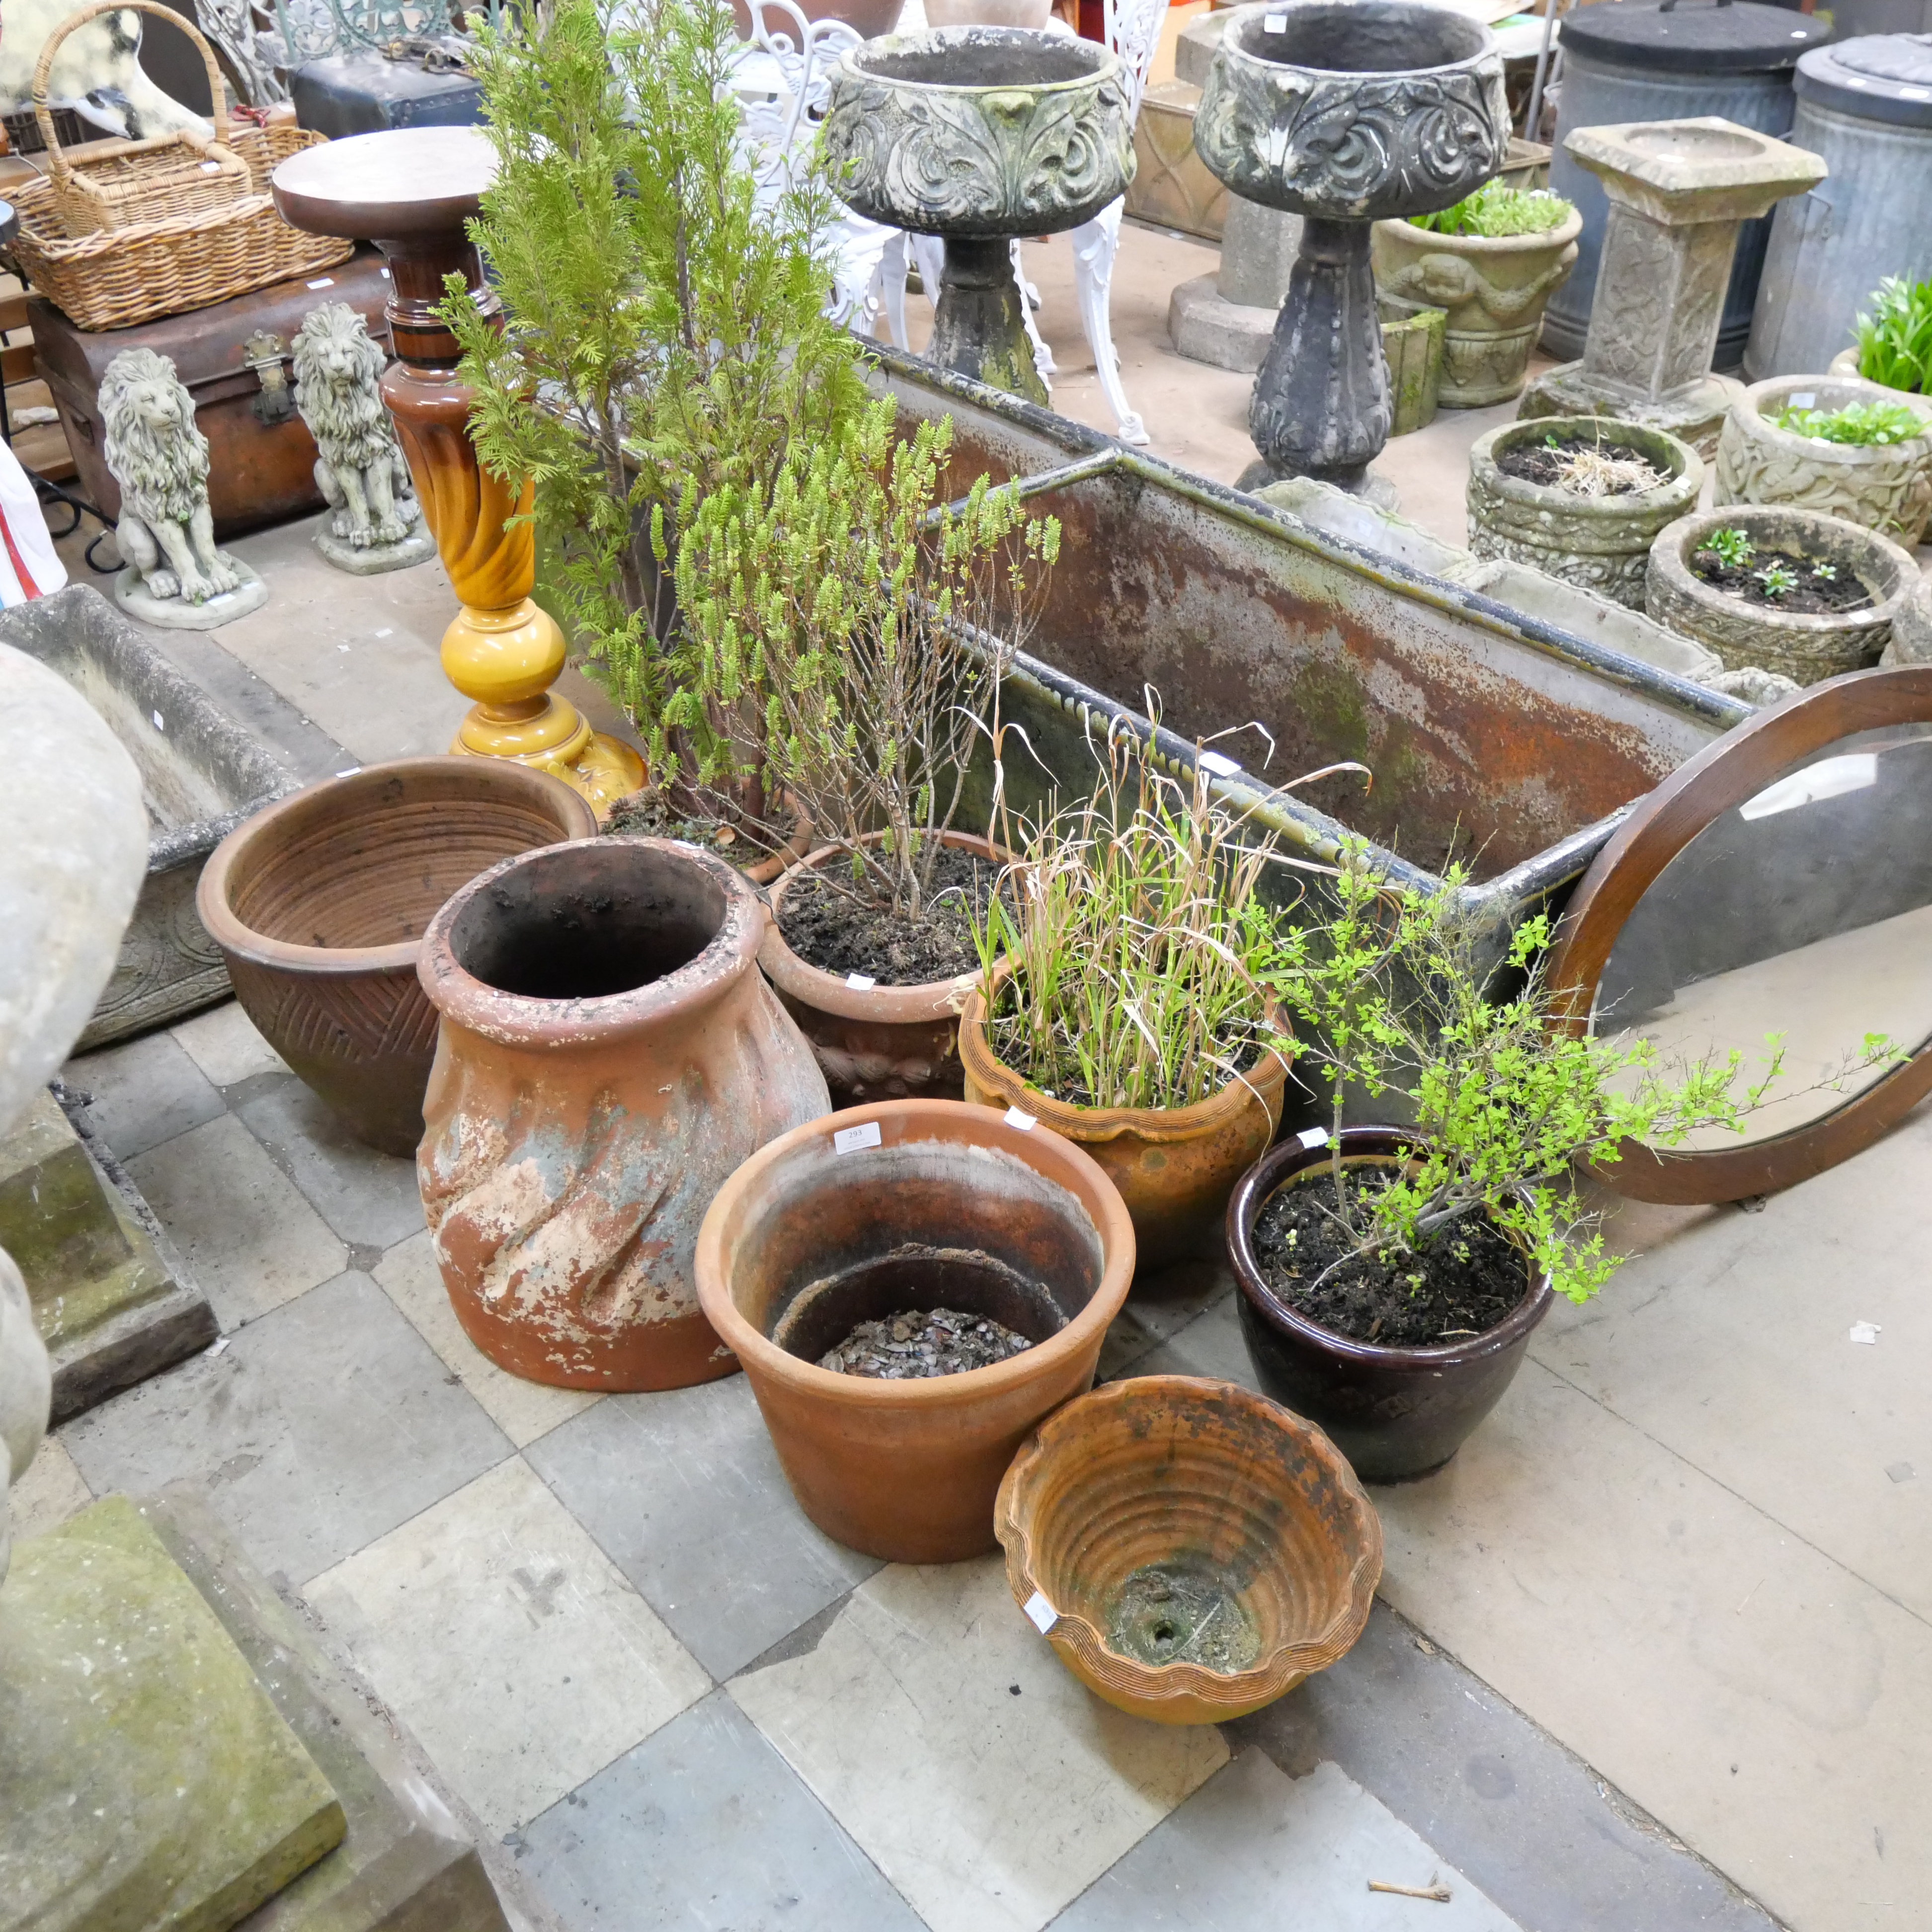 Assorted garden planters